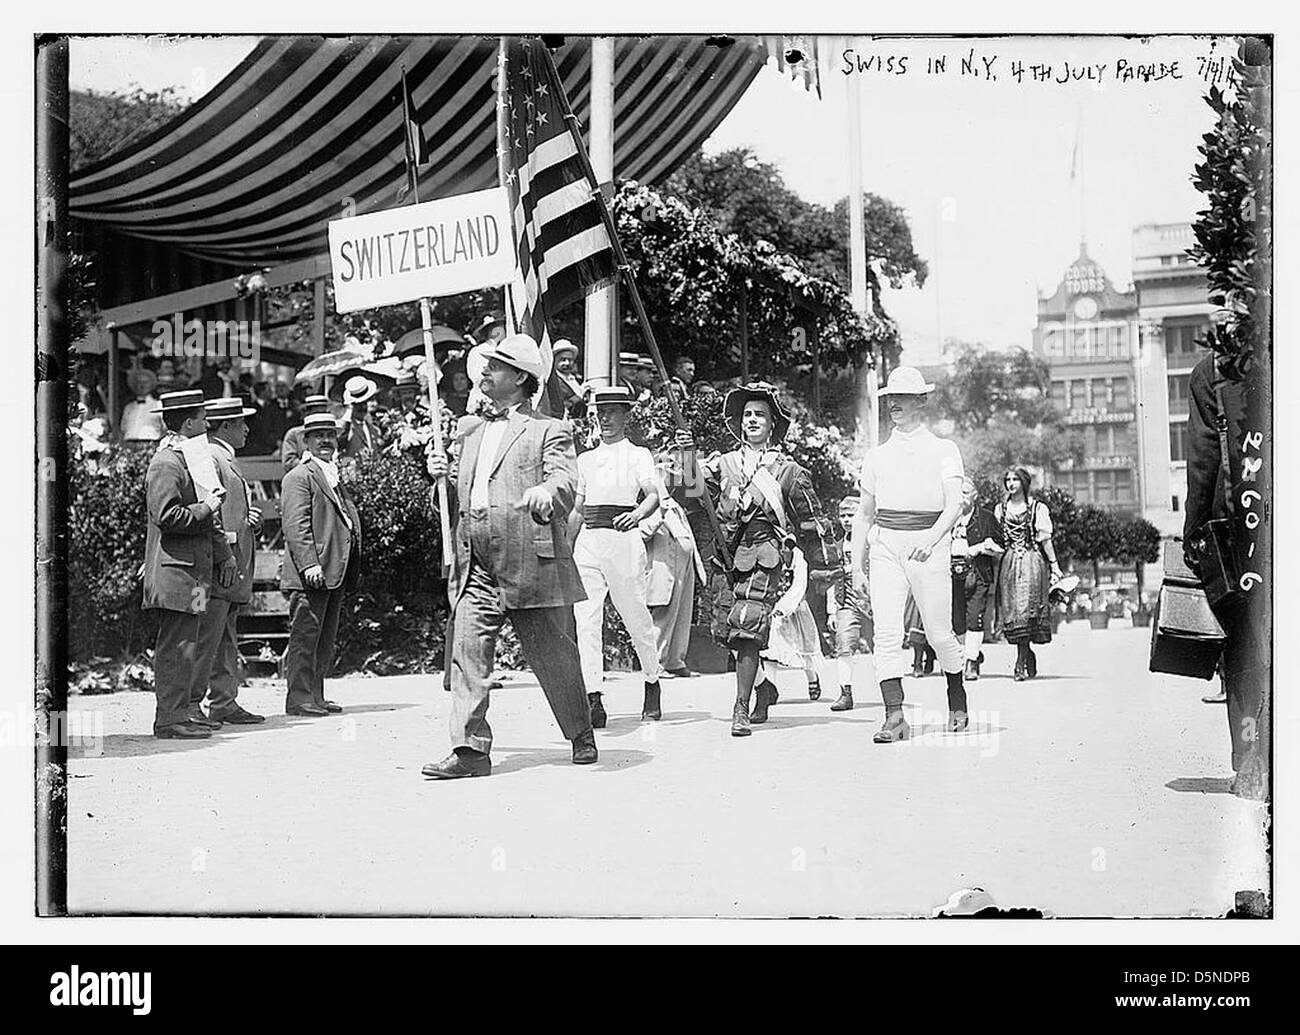 Schweizerinnen und Schweizer in N.Y. 4. Juli Parade (LOC) Stockfoto